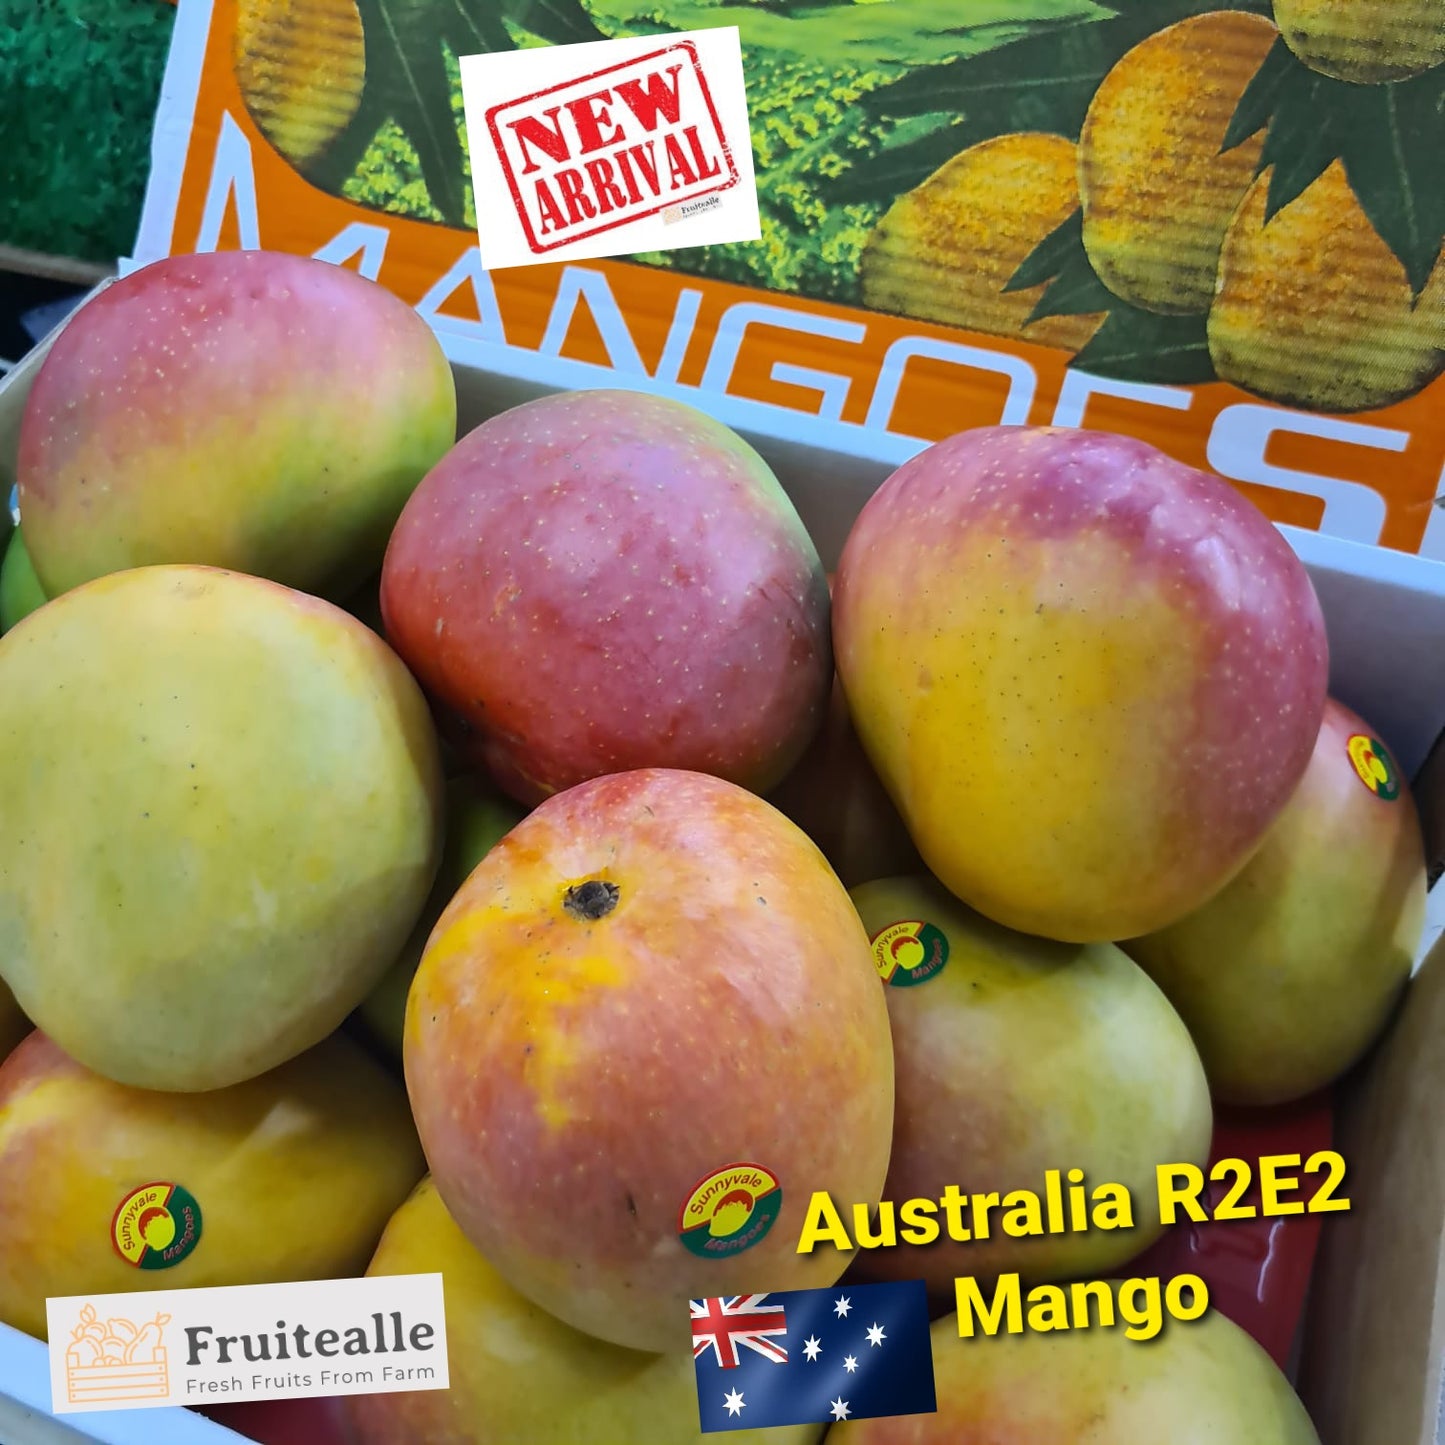 Mango - Australia R2E2 Mango